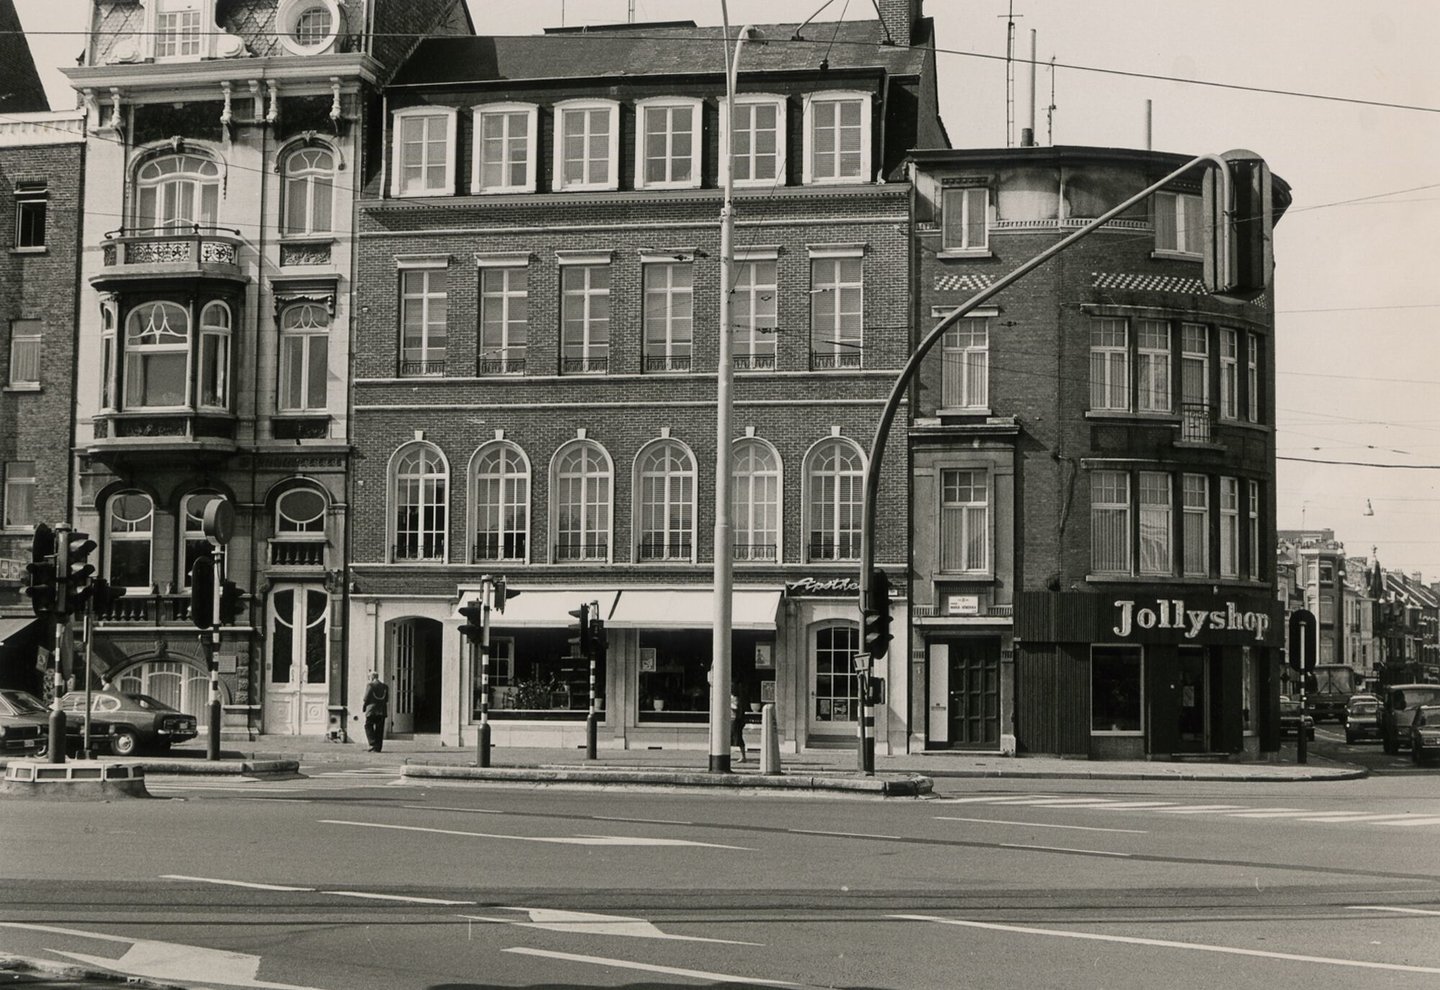 Straatbeeld met gevel van een apotheek en Jollyshop in Gent